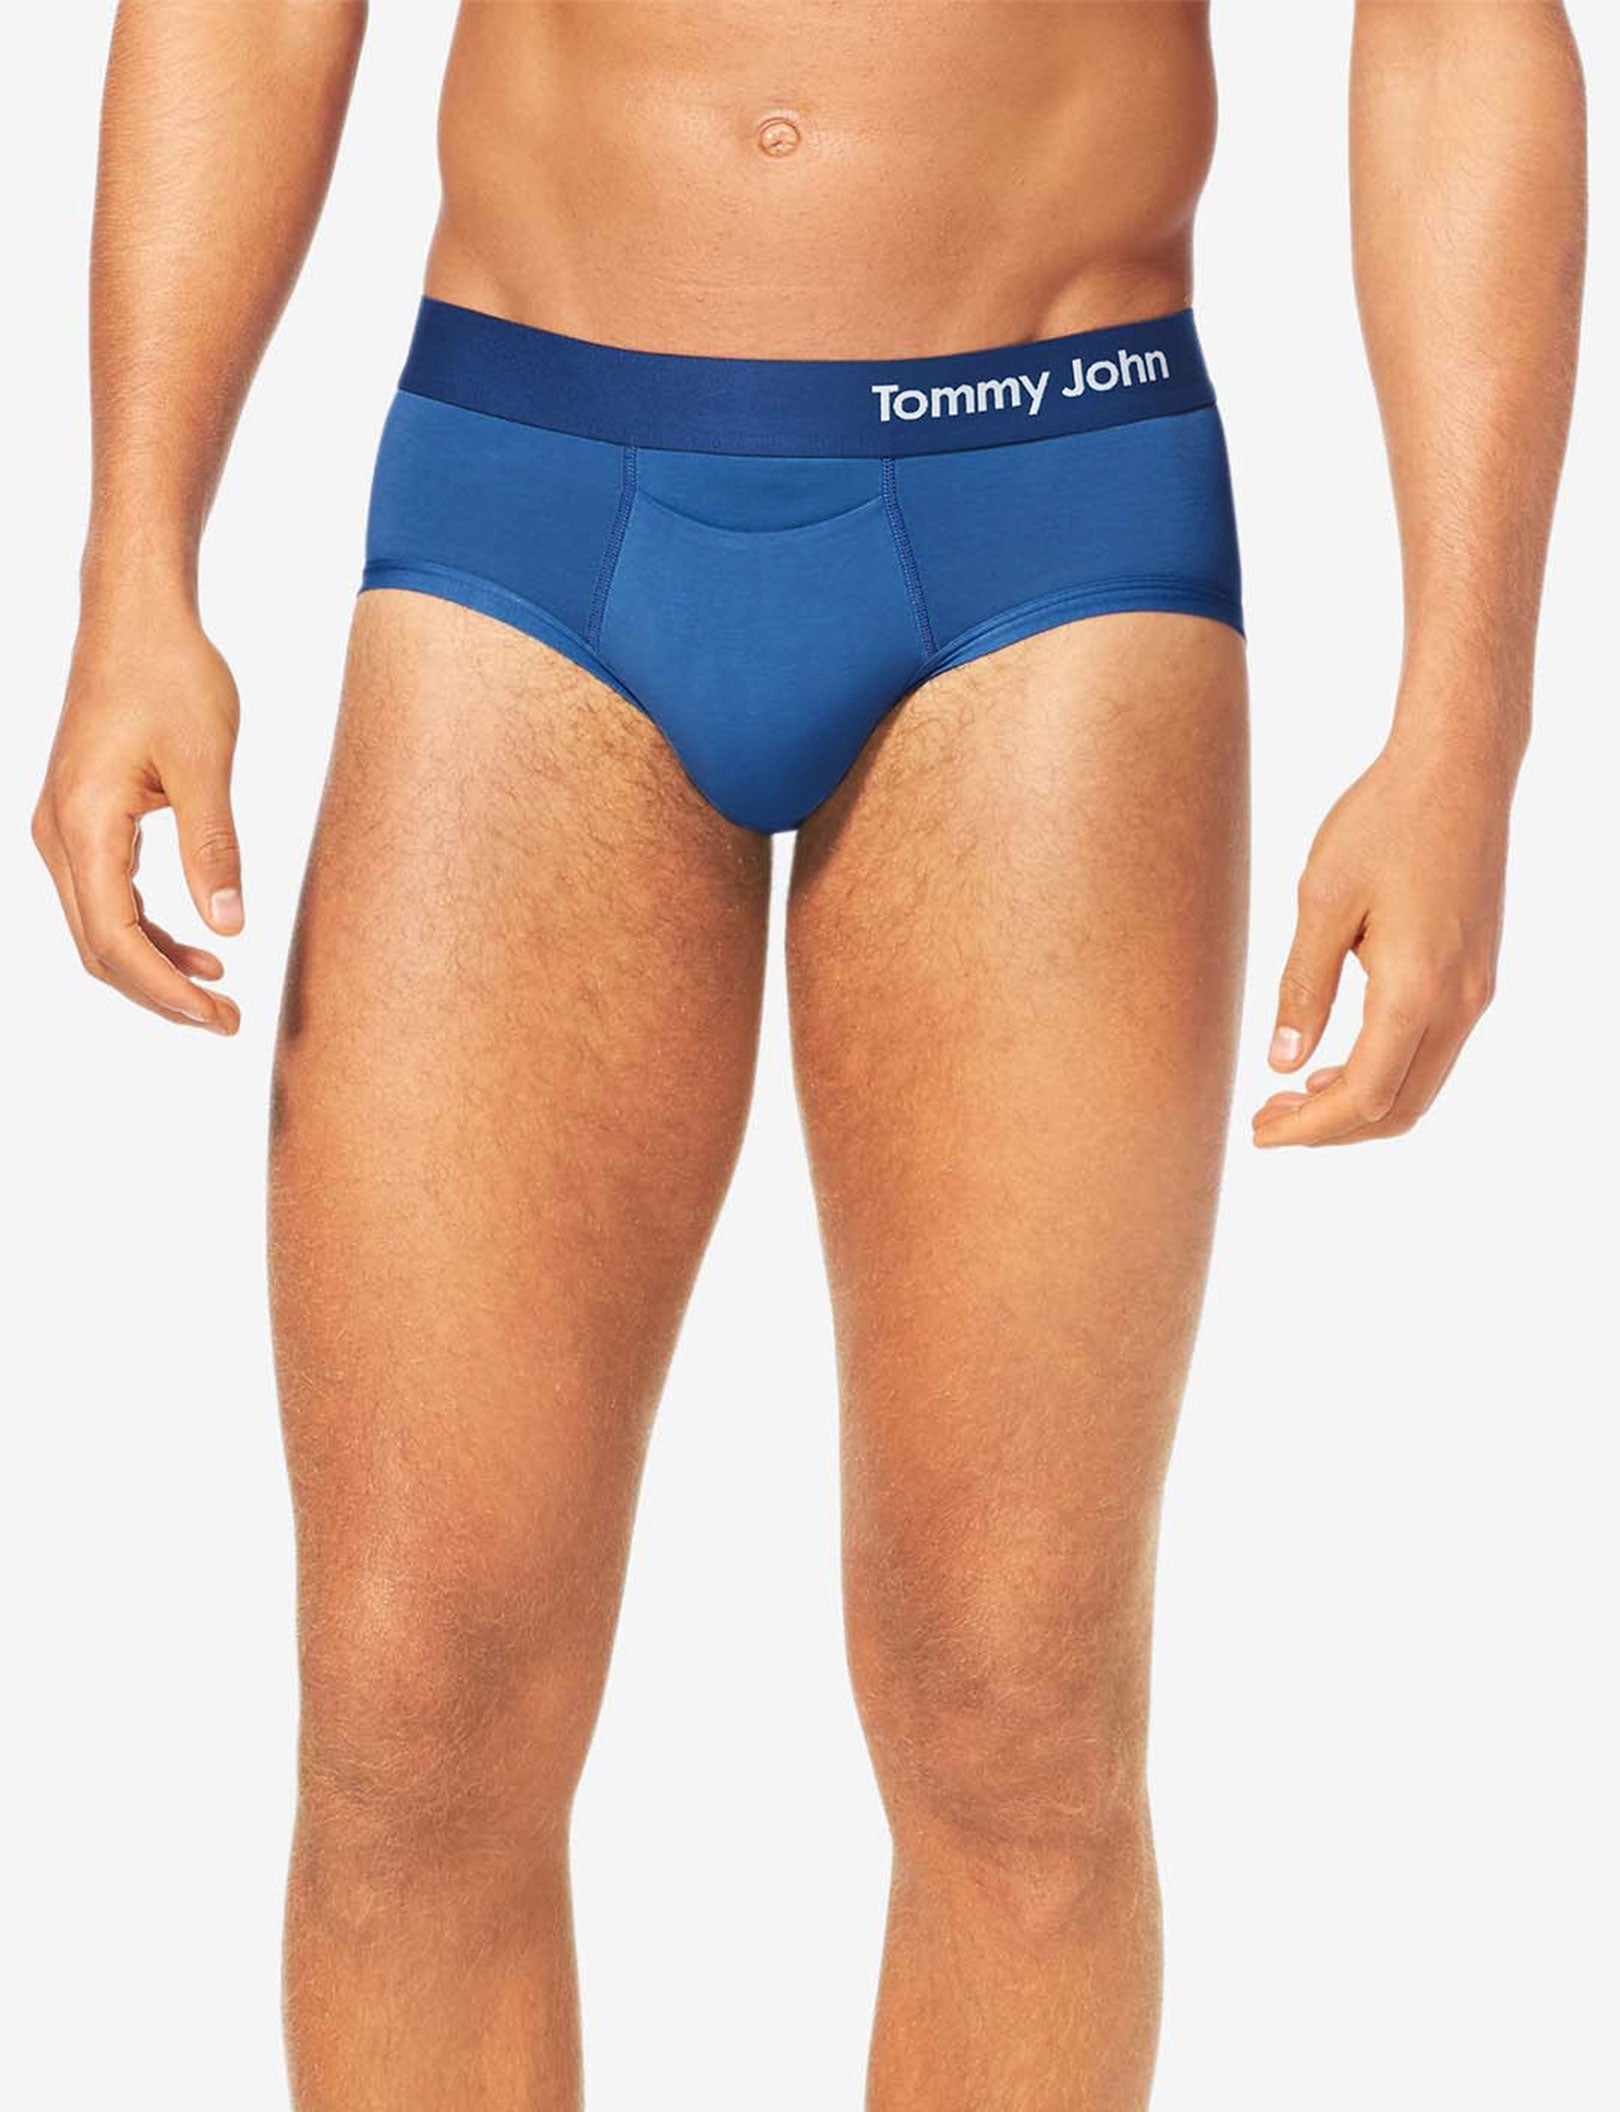 tommy john underwear clearance